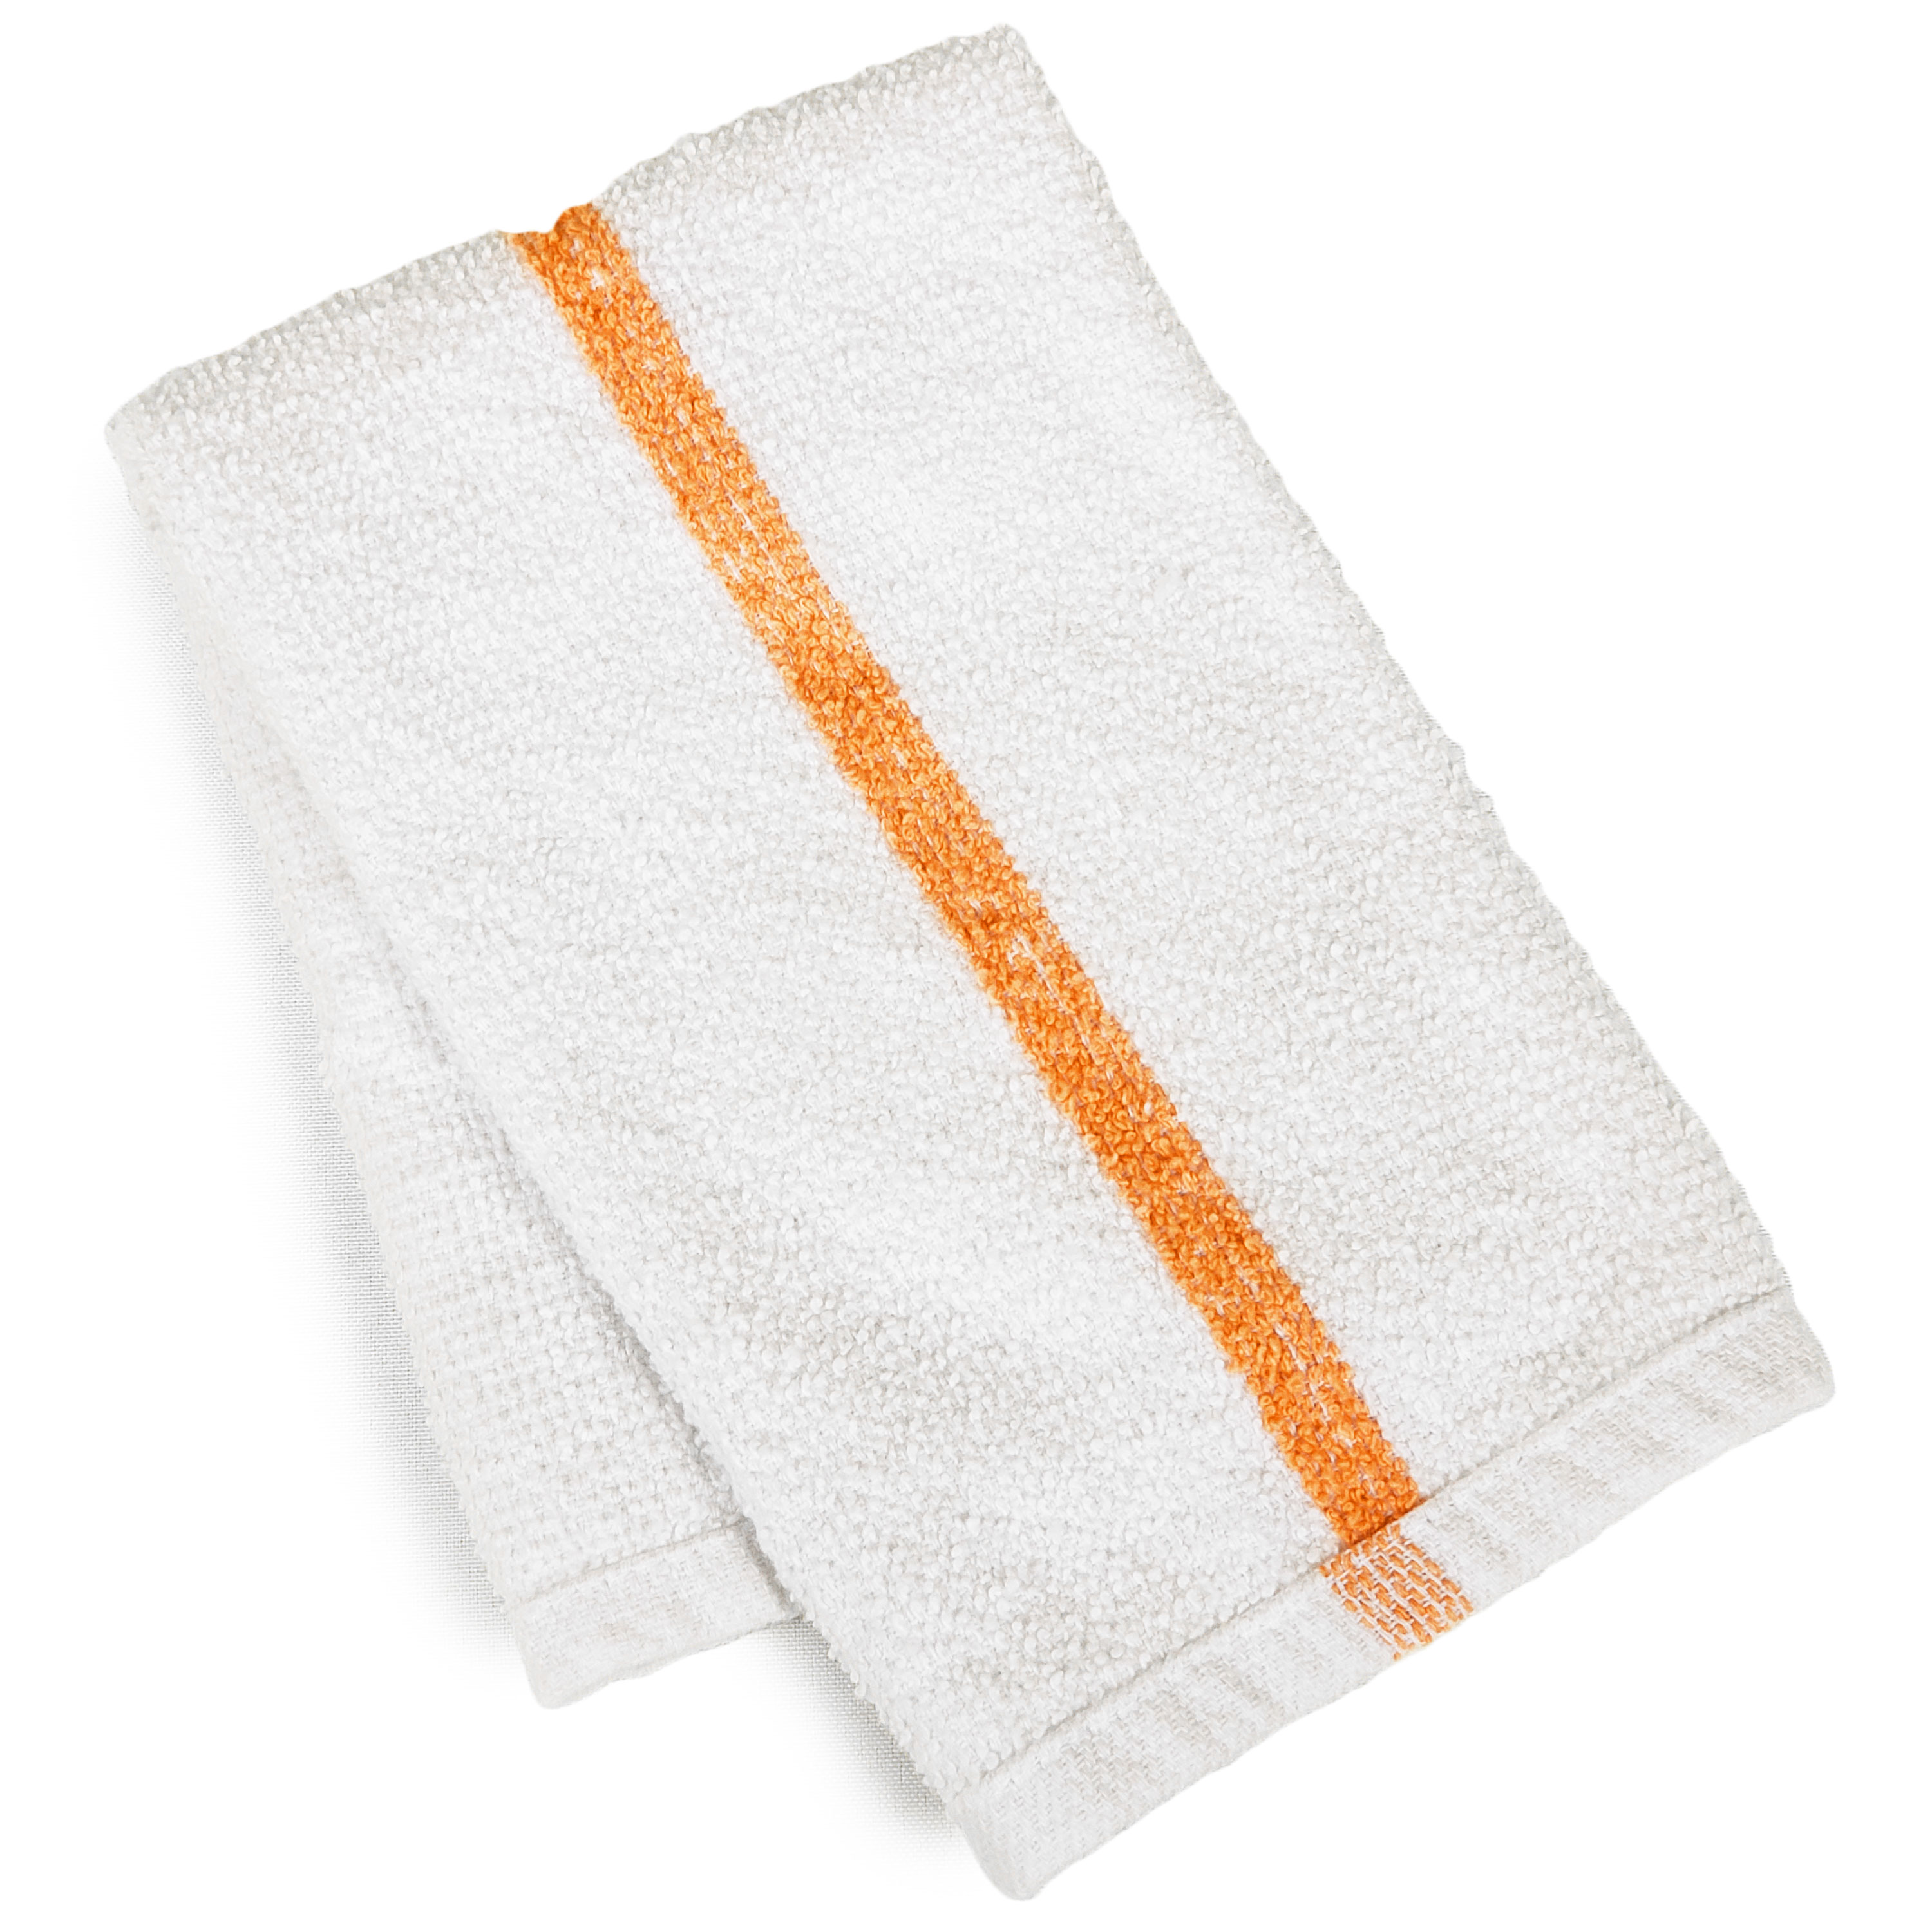 36 PC New Cotton Blend White Restaurant Bar Mops Kitchen Towels (3 Dozen)  (36, Gold Stripe)